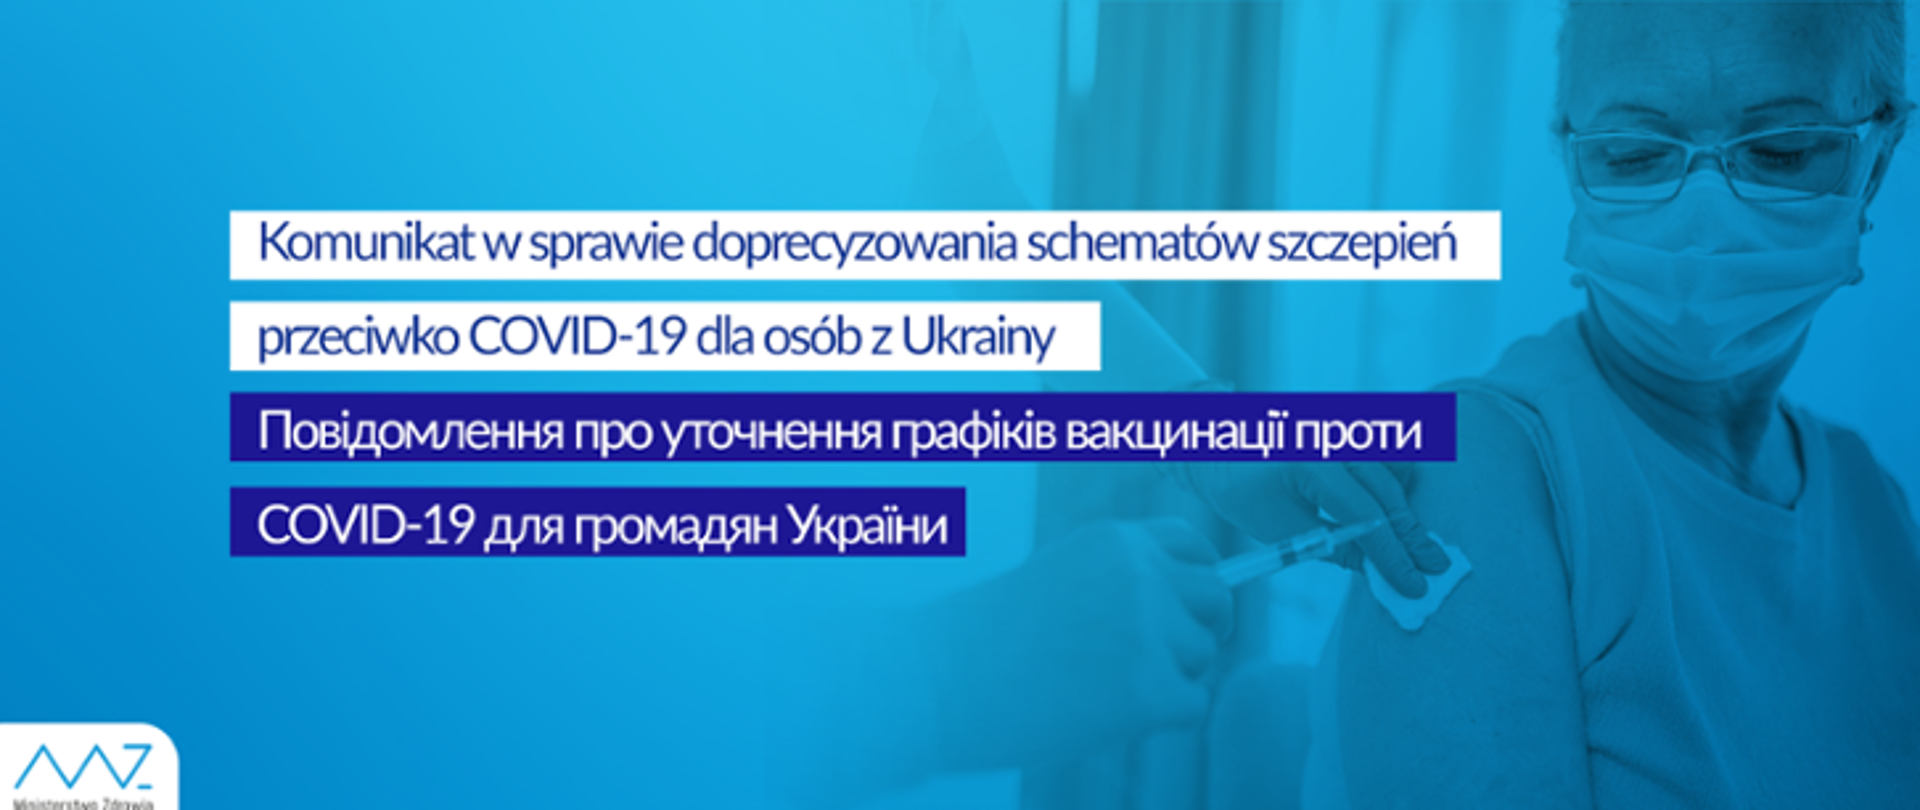 Na grafice widoczne jest szczepienie pacjenta przez medyka. W centrum znajduje się napis: Komunikat w sprawie doprecyzowania schematów szczepień przeciwko Covid-19 dla osób z Ukrainy. Jest on widoczny w języku polskim oraz ukraińskim. W lewym dolnym rogu znajduje się logo Ministerstwa Zdrowia. 